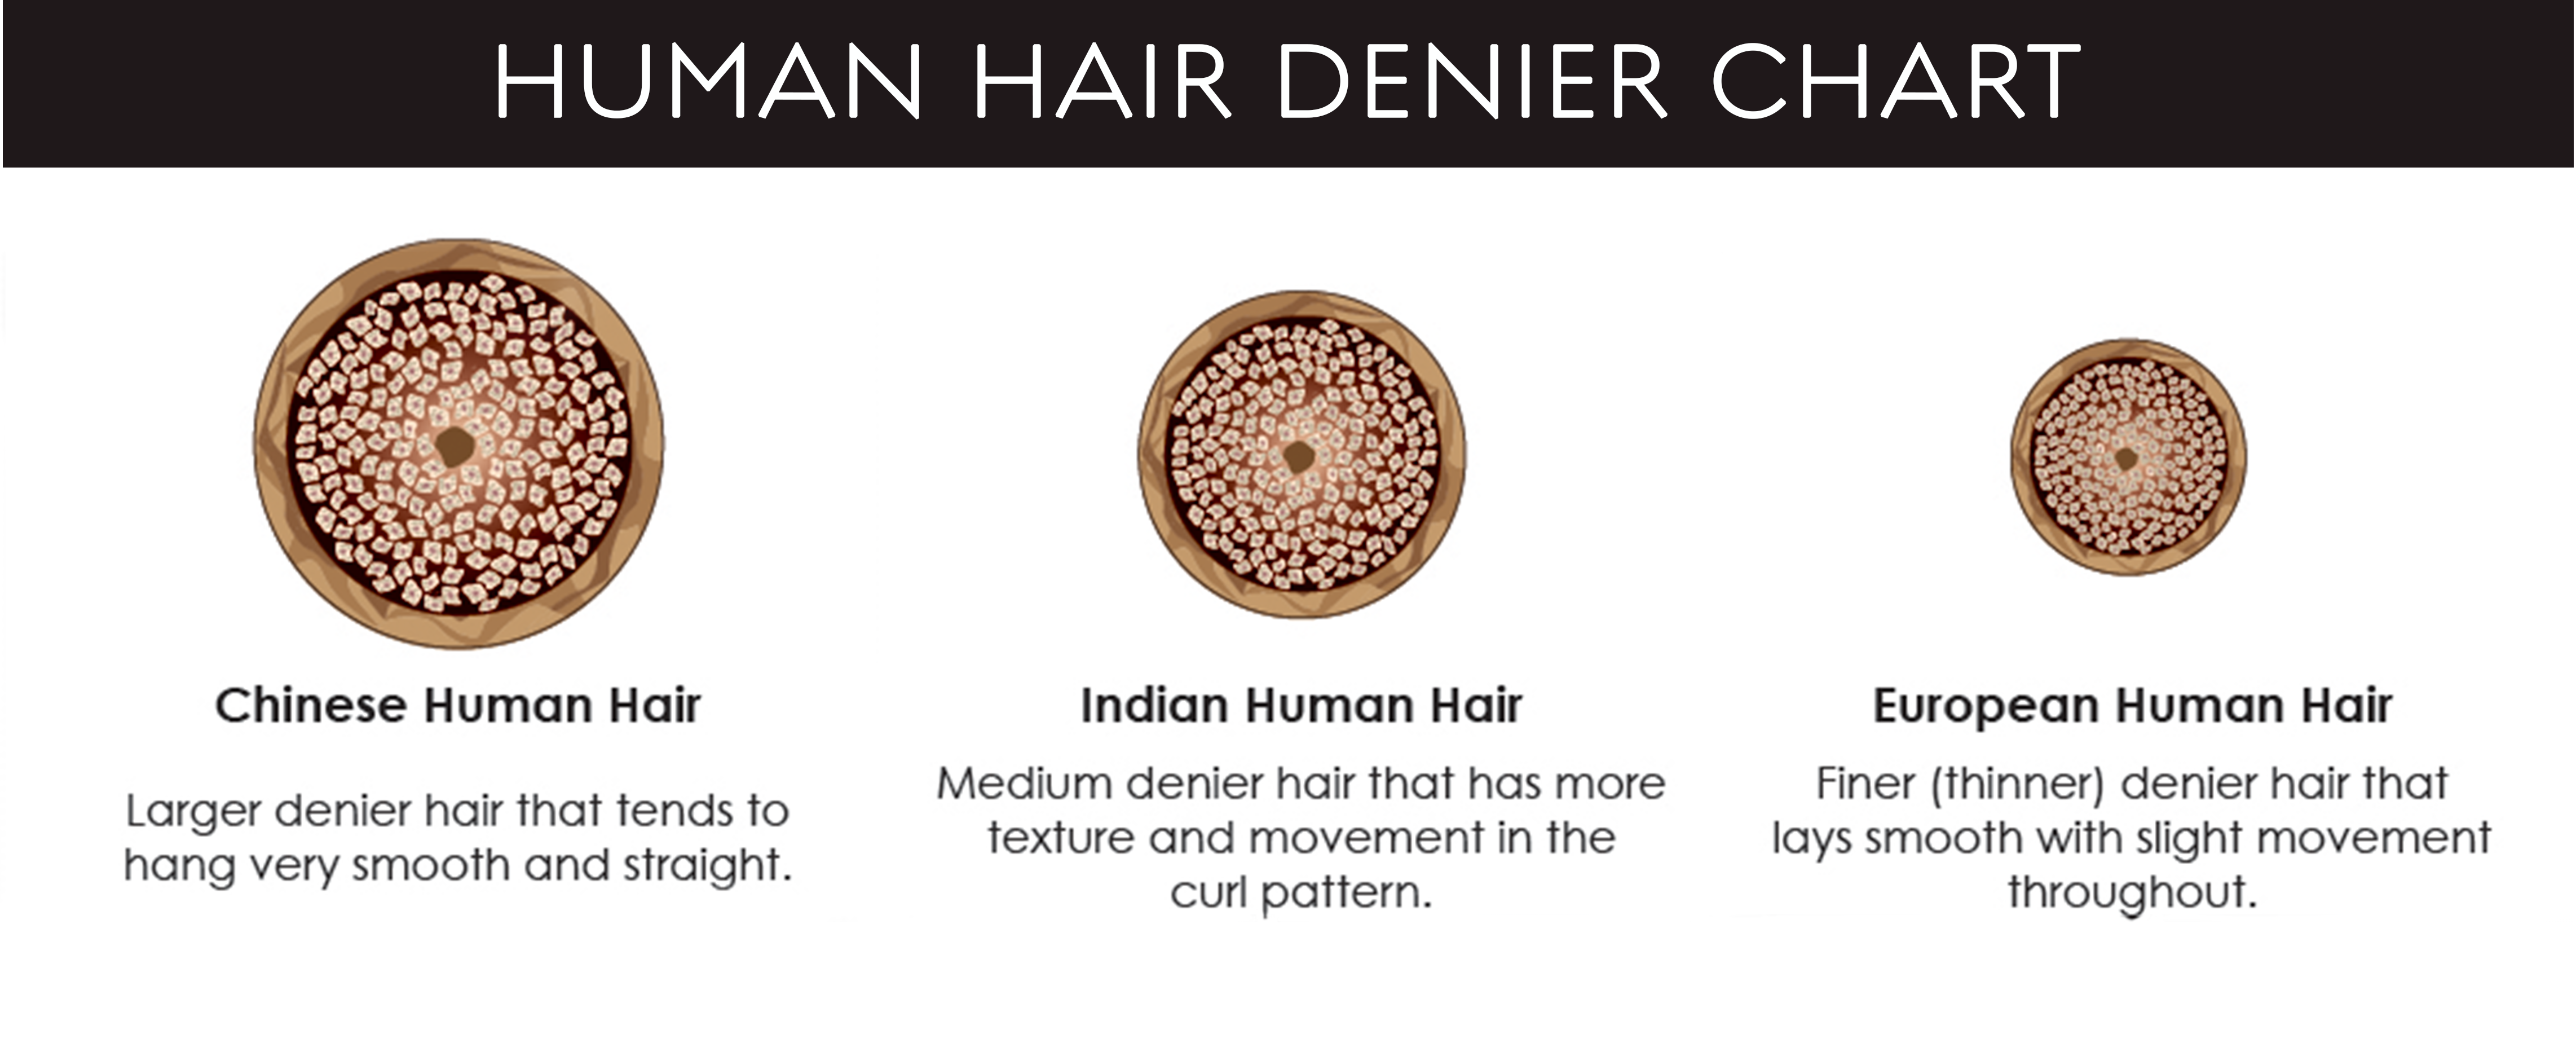 Human hair denier chart